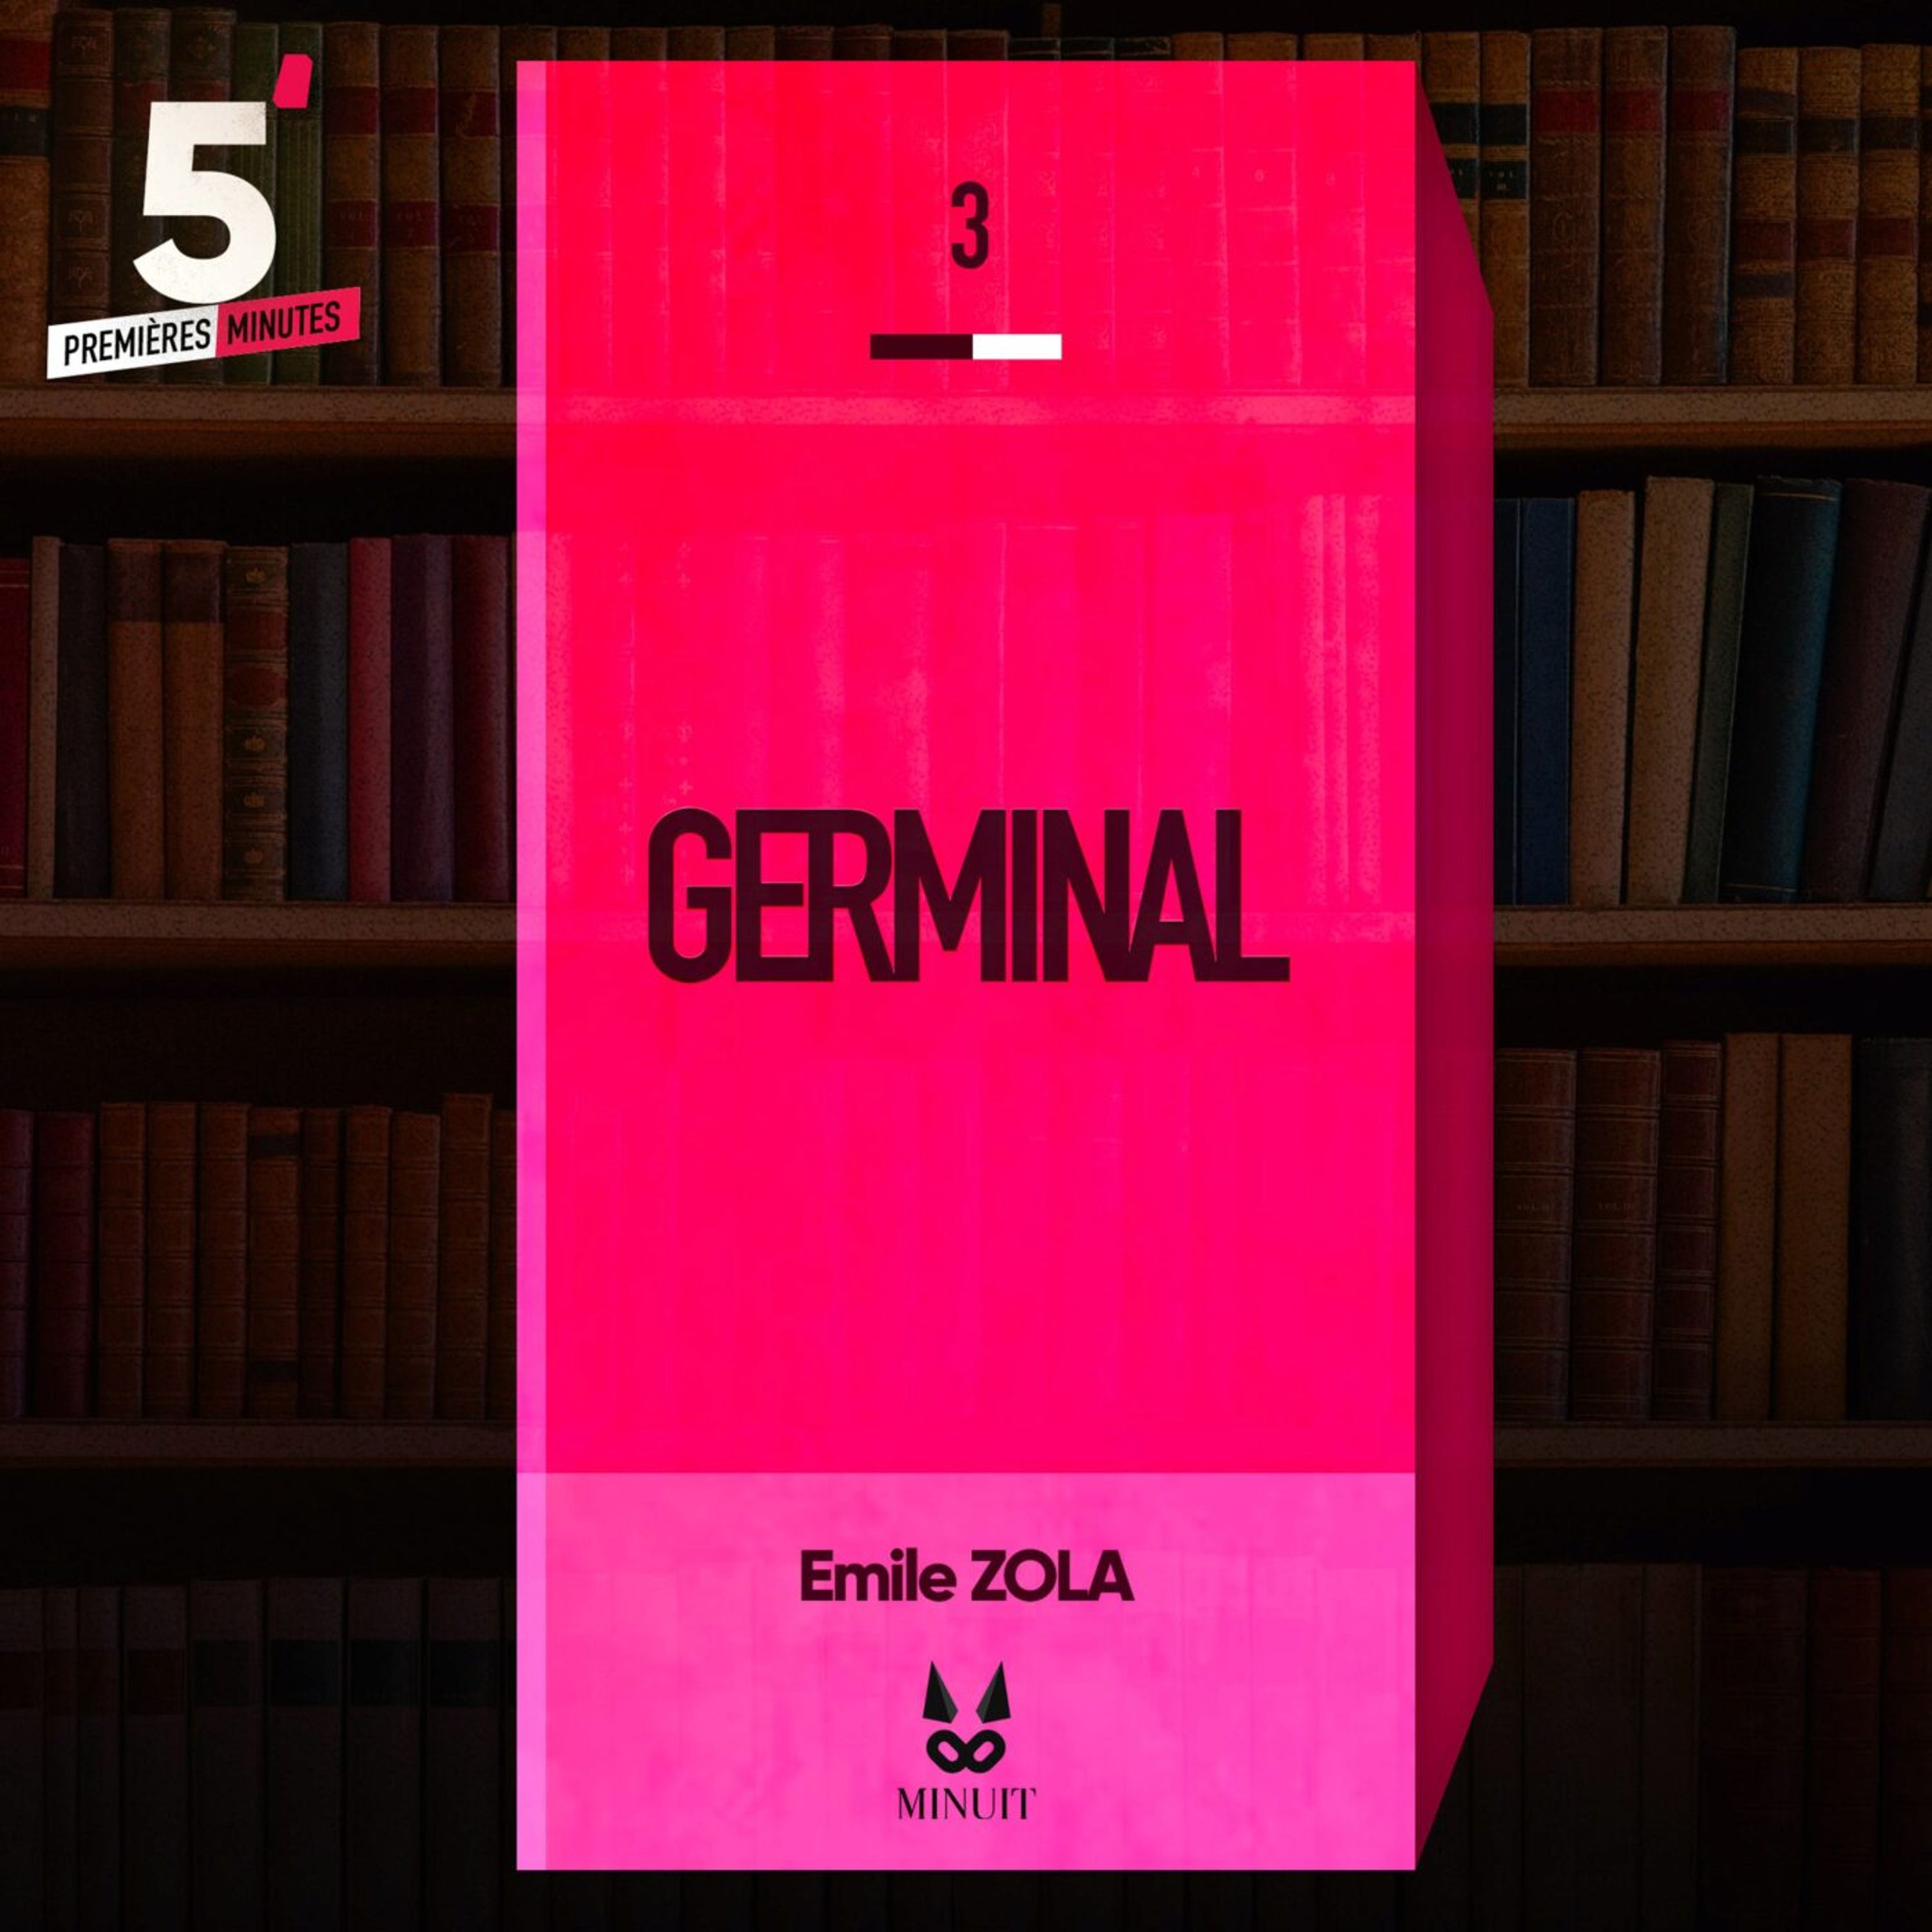 "Germinal" • Emile ZOLA